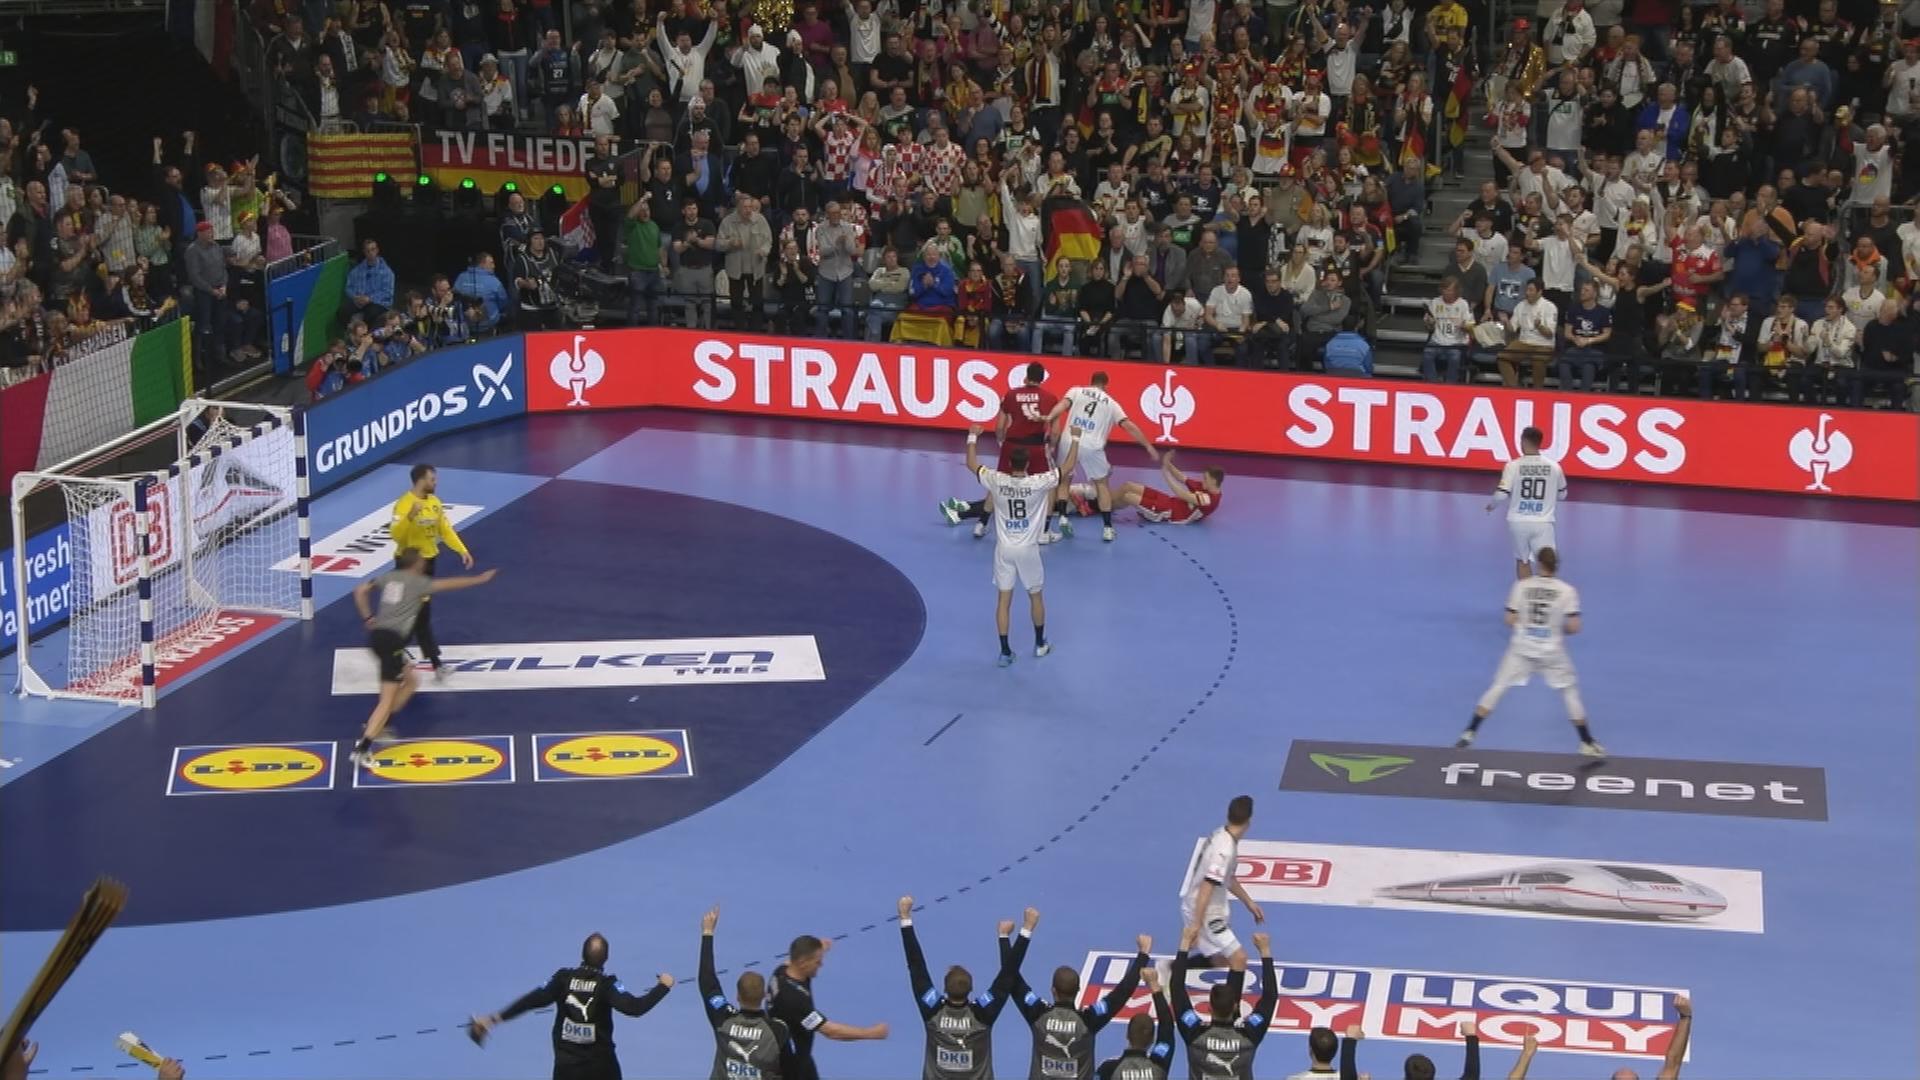 Auf dem Bild ist das deutsche Handballteam auf dem Spielfeld zu sehen.